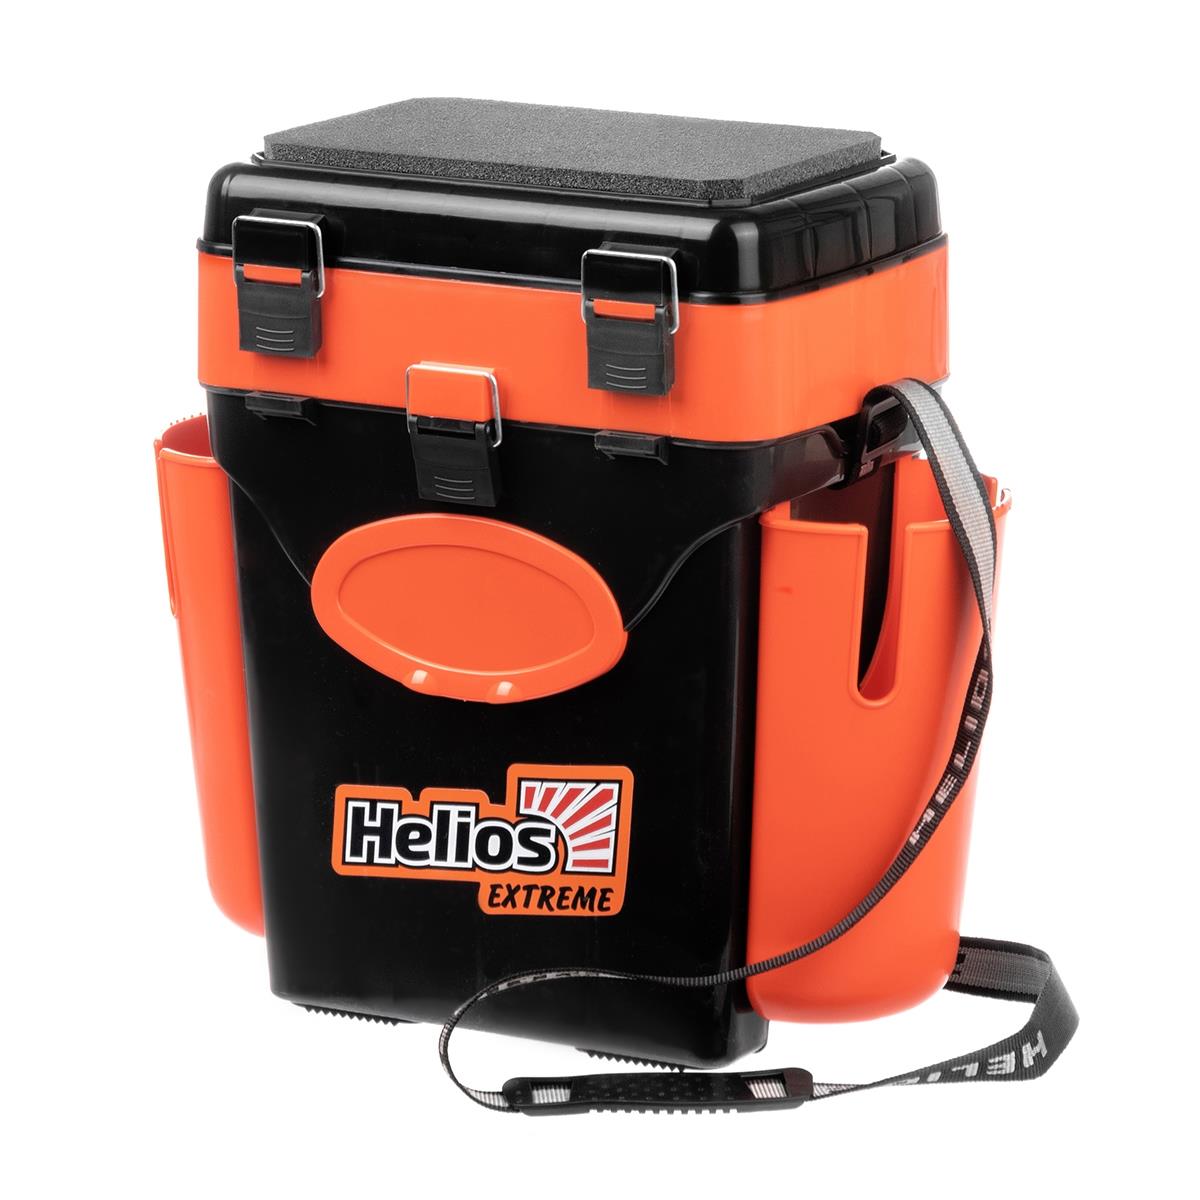 Ящик FishBox двухсекционный 10л оранжевый Helios универсальный ящик для хранения вещей рыжий кот